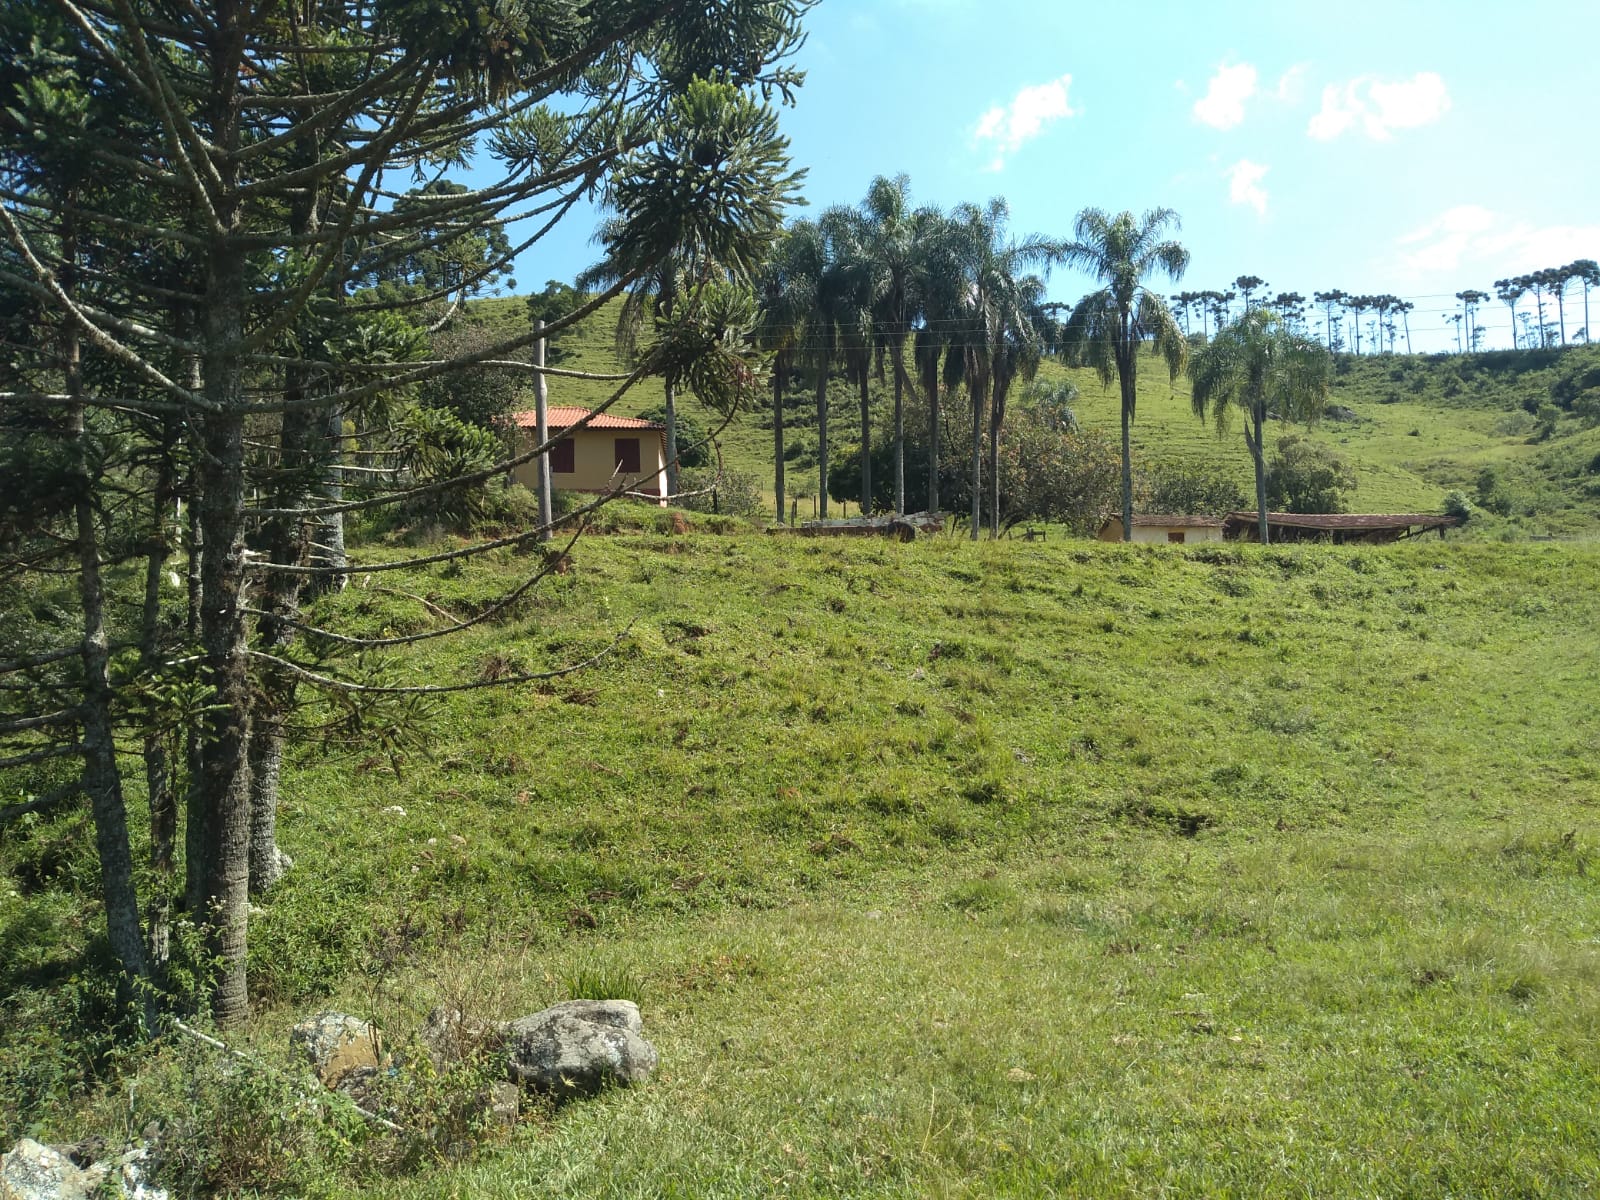 Fazenda com casa simples, lago de lazer, divisa com Extrema | Joanópolis - SP | código 848